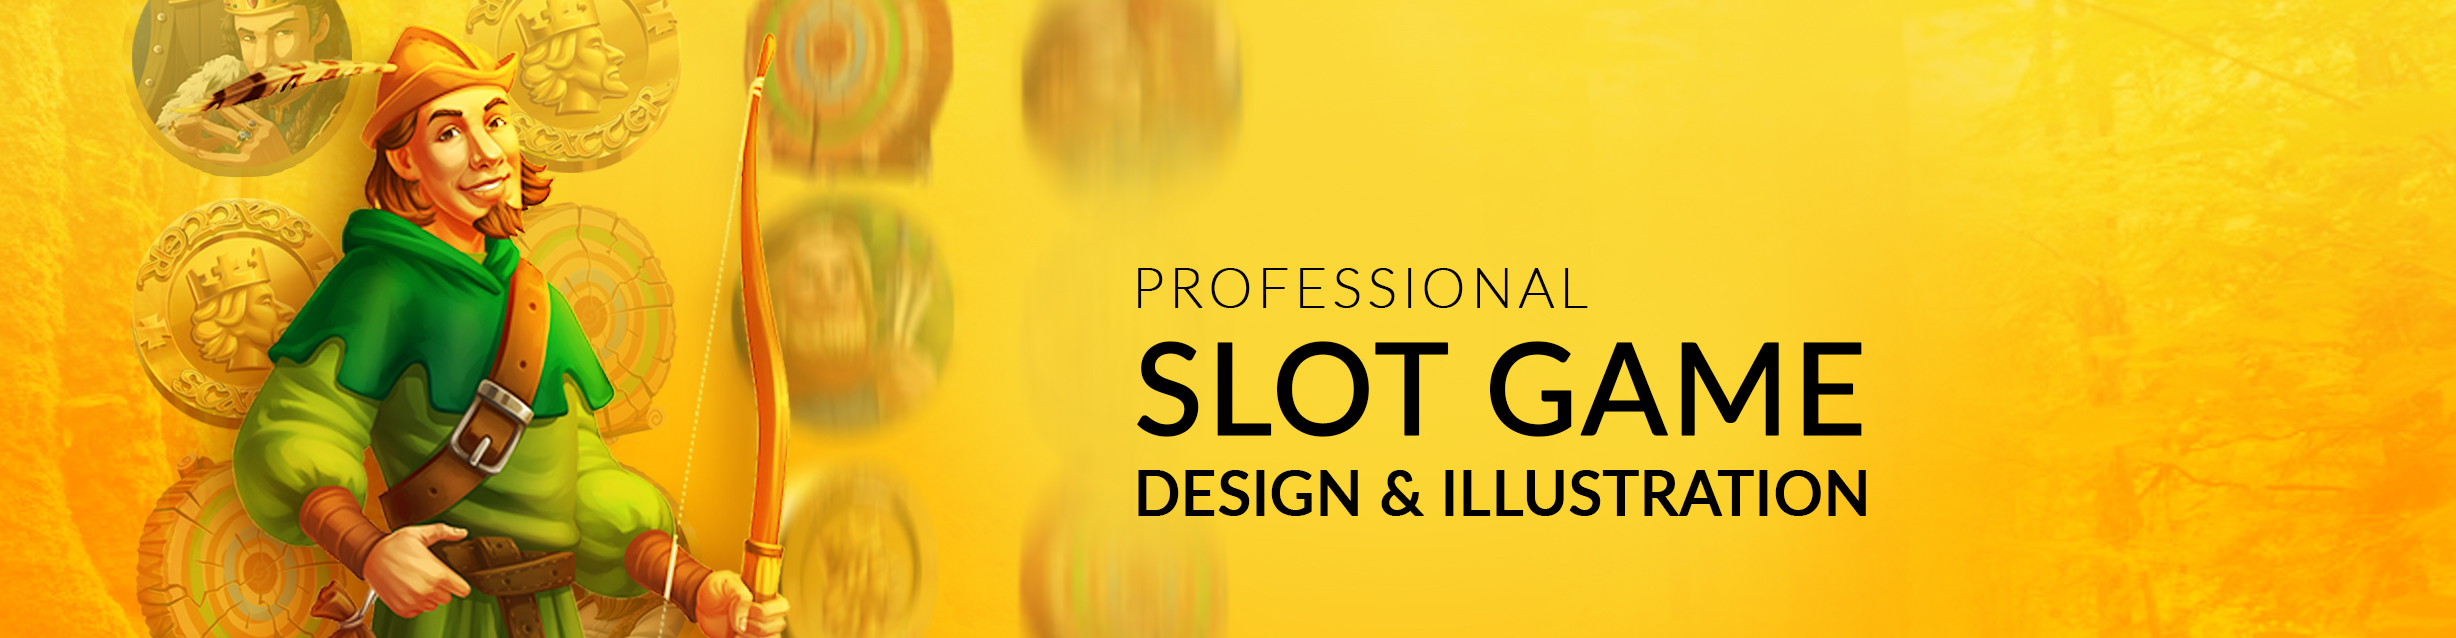 Slot Game Design for Online Casino | CasinoDesignPro